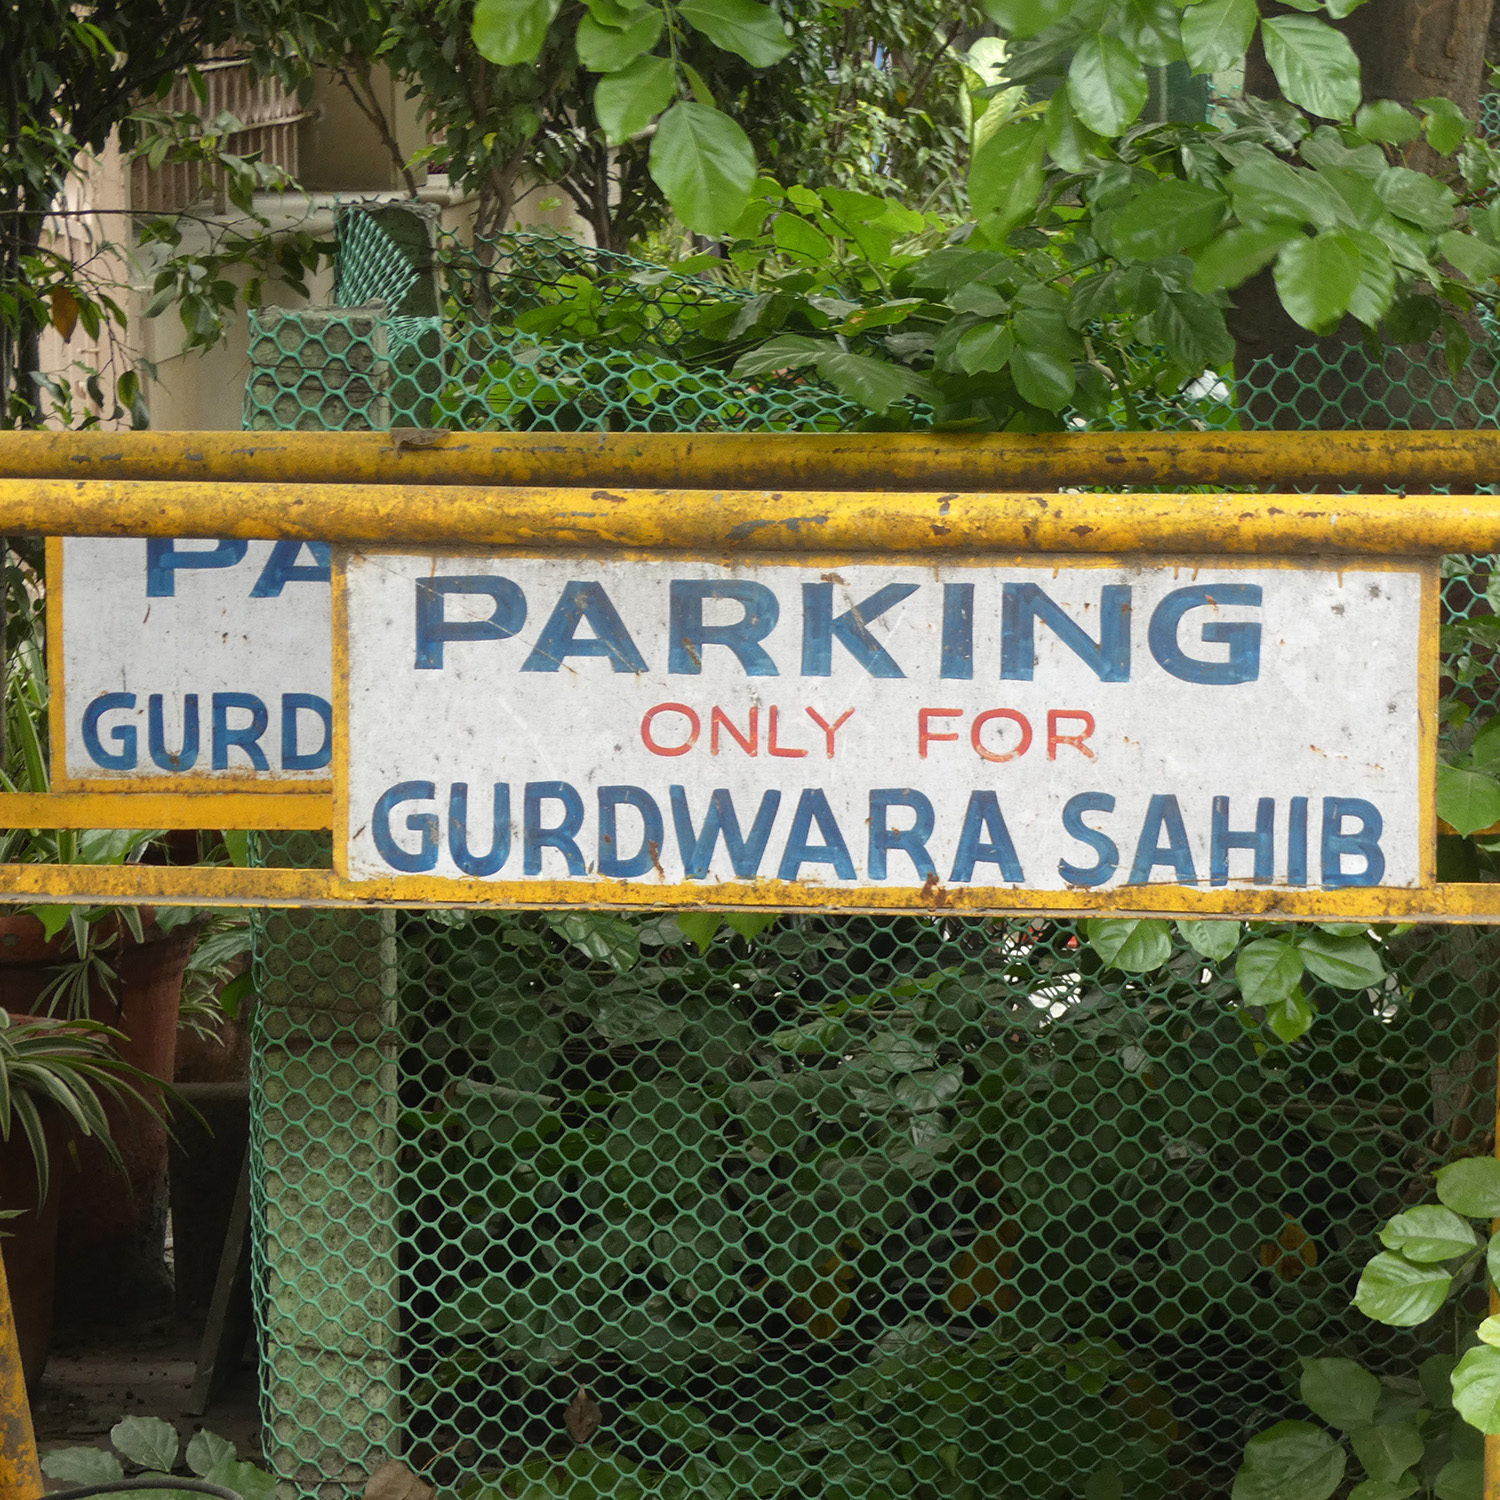 Parking only for Gurudwara Sahib